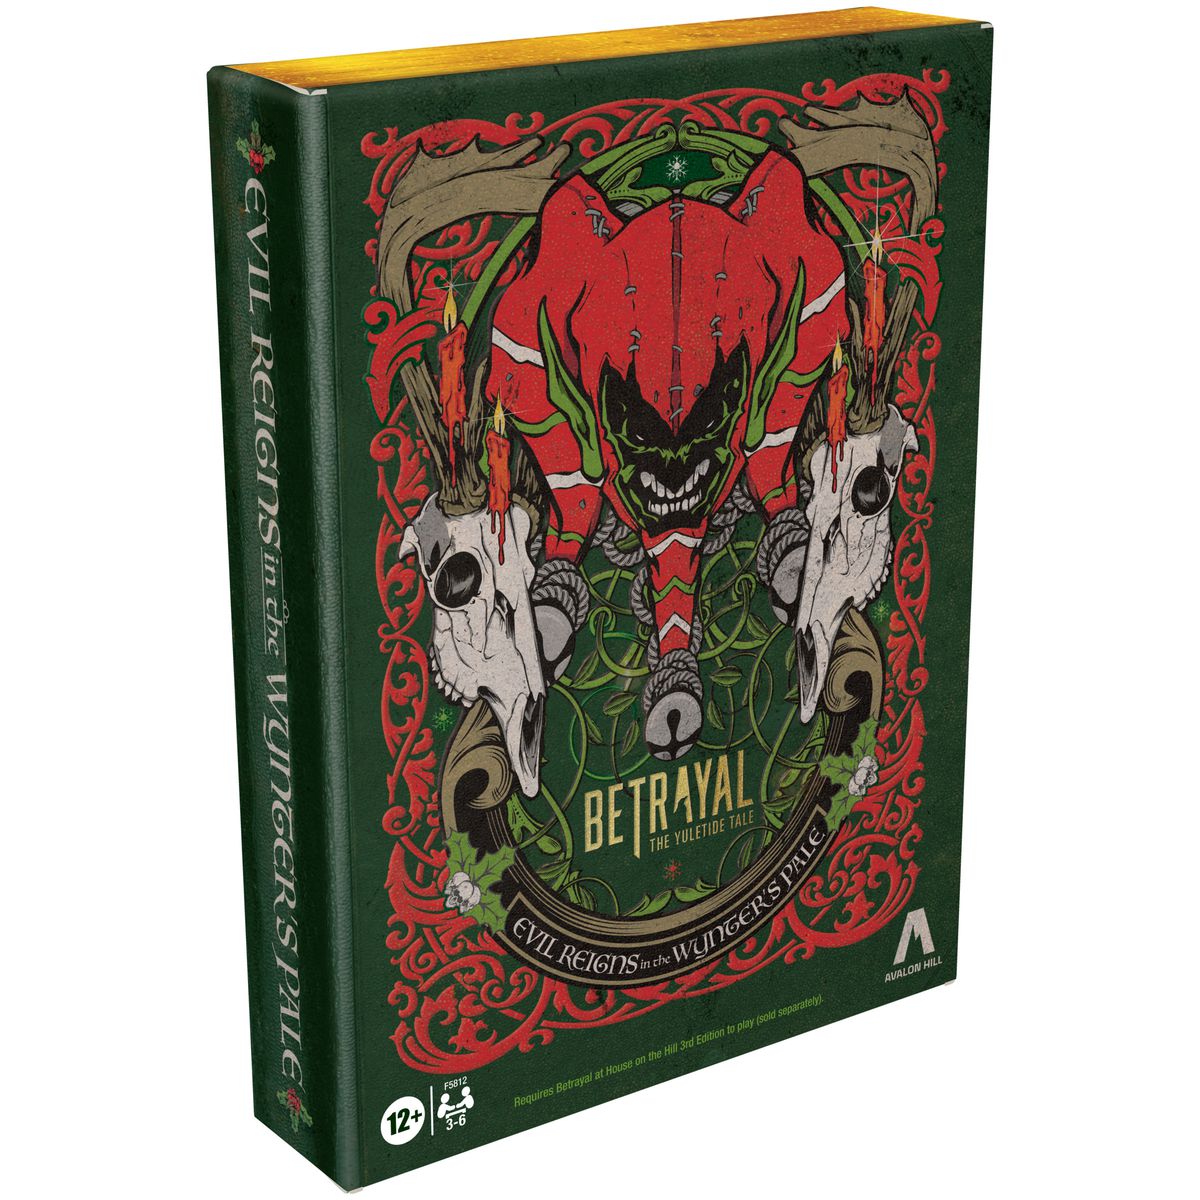 En bokformad låda för Wynter's Pale-expansionen för Betrayal.  En demonisk tomte och djurskallar med ljus pryder omslaget.